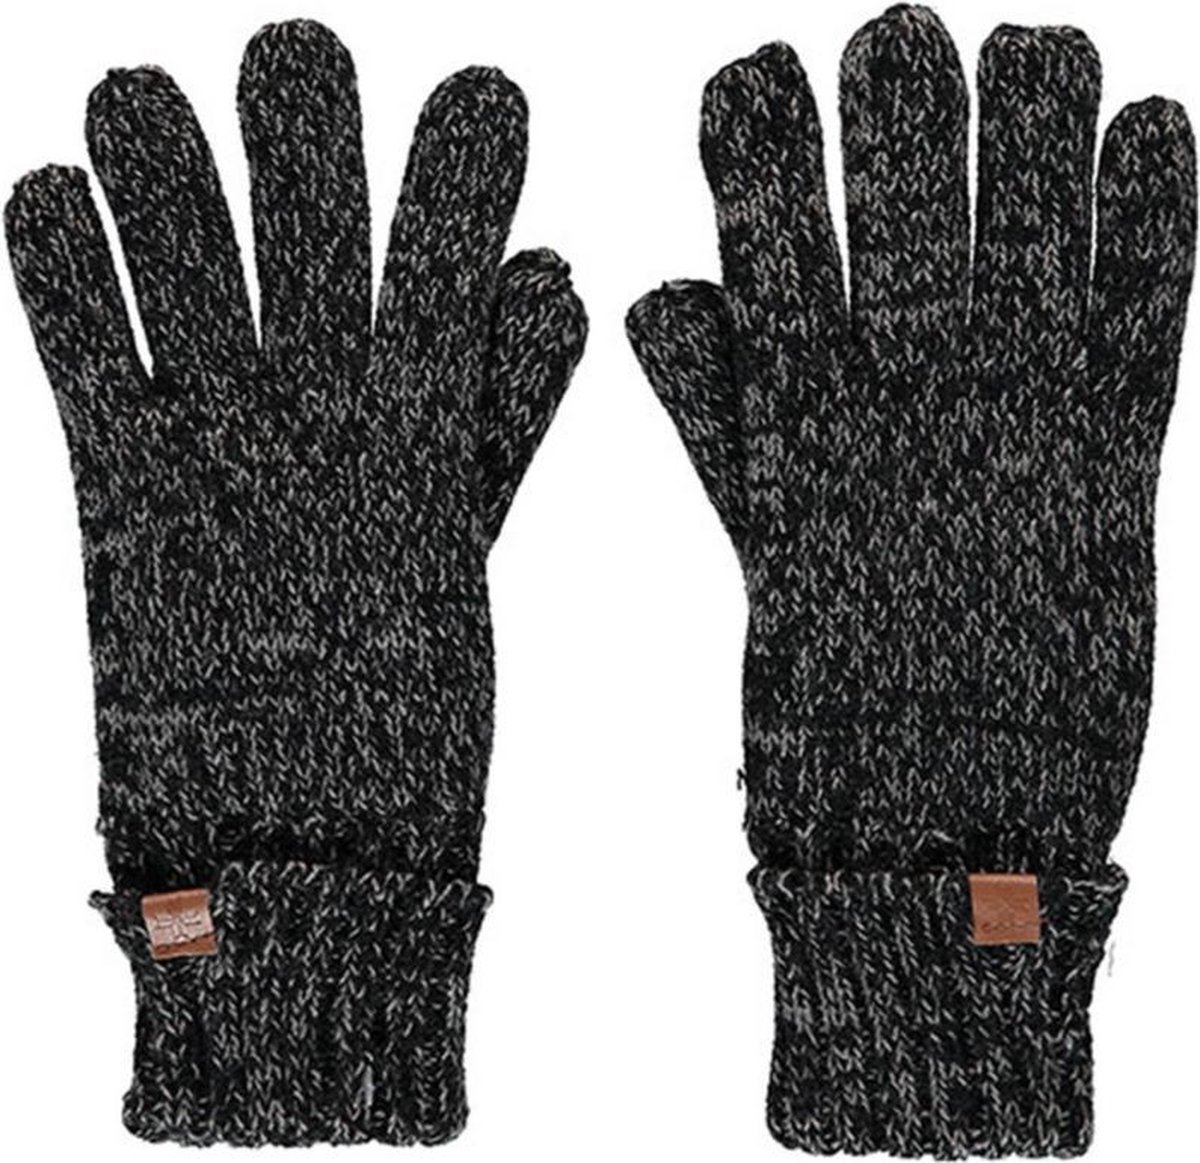 Donkergrijs gemeleerde gebreide handschoenen voor kinderen - One size - Warme fleece voering handschoenen voor jongens/meisjes